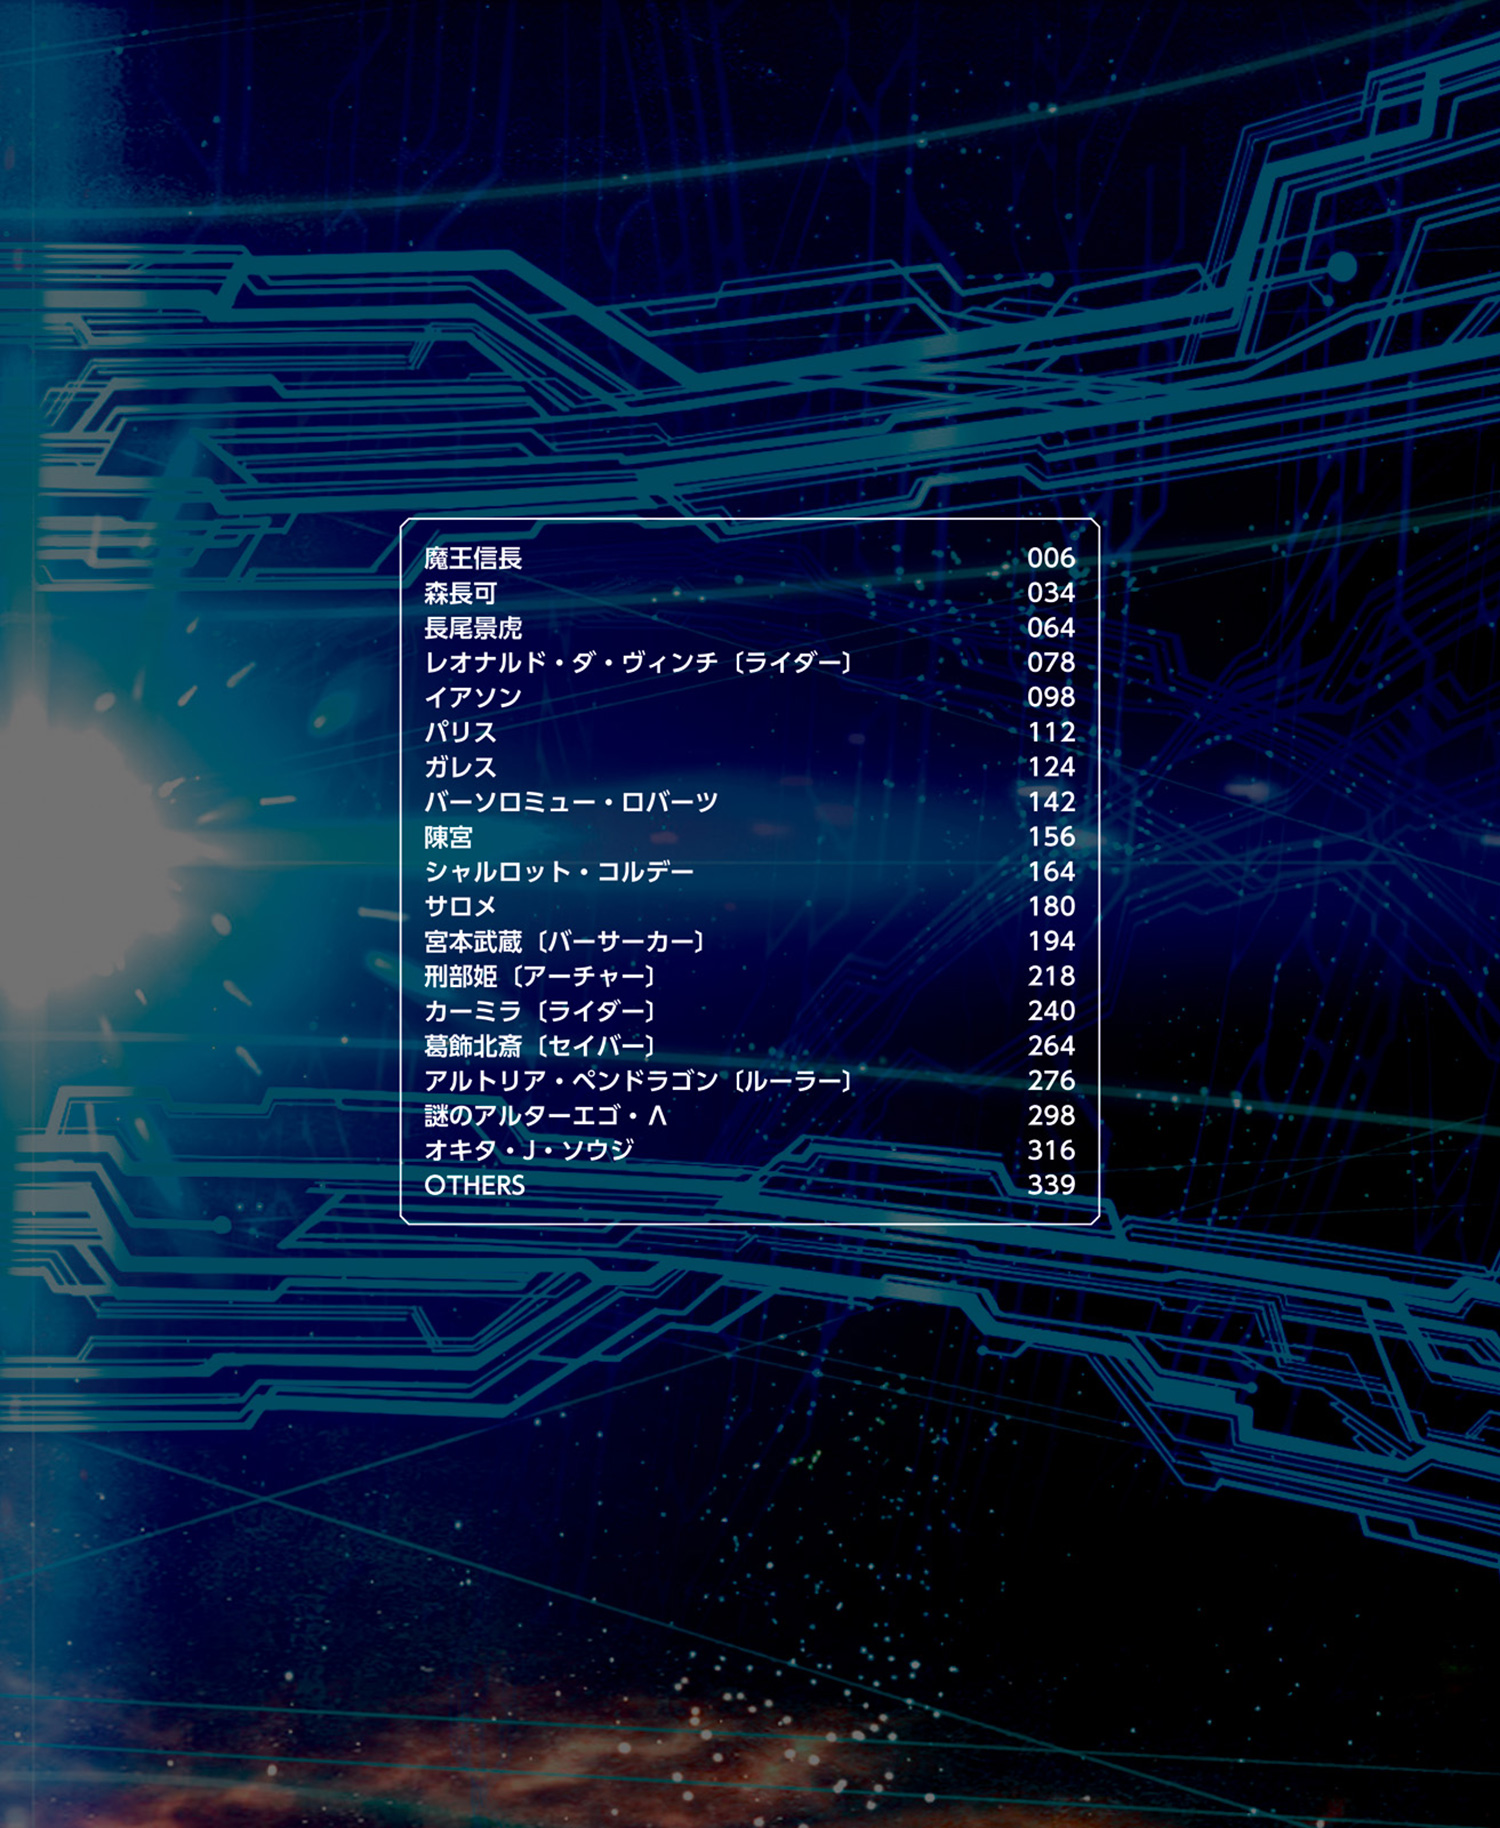 9巻-1]Fate/Grand Order material【試し読み】 - TYPE-MOON｜TYPE-MOON 